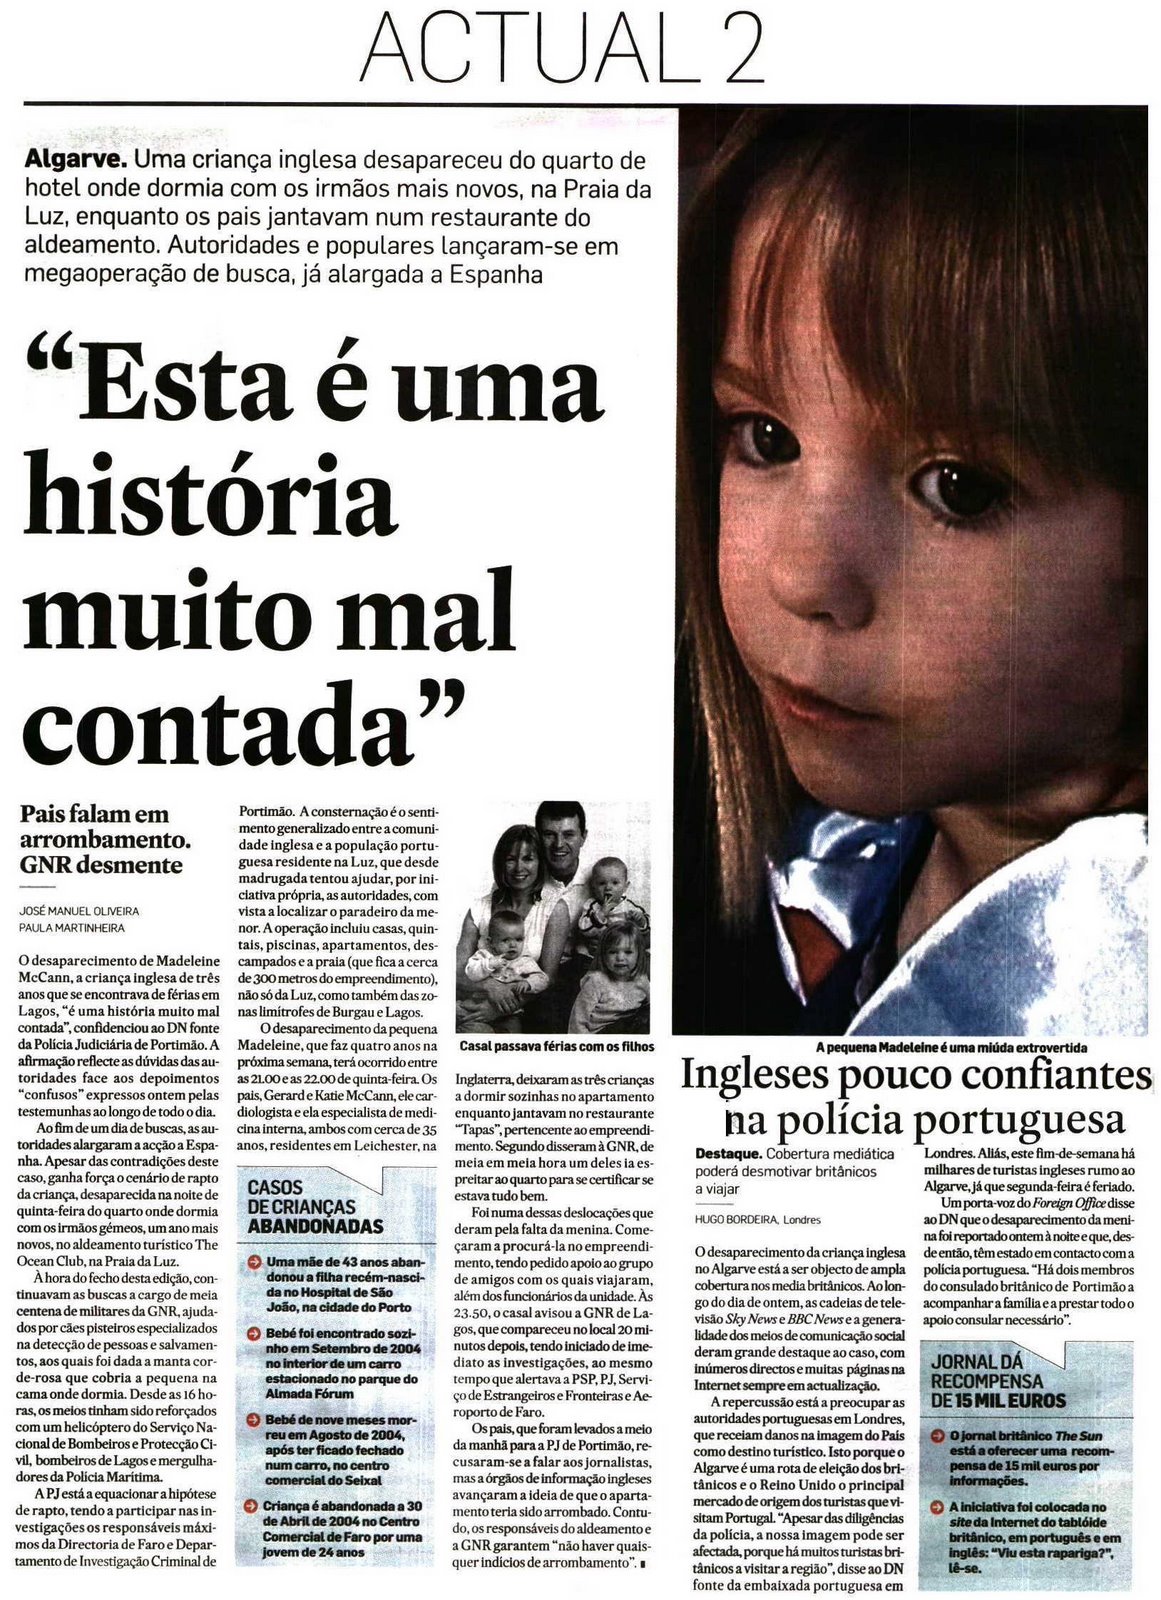 Diário de Notícias, 05 May 2007